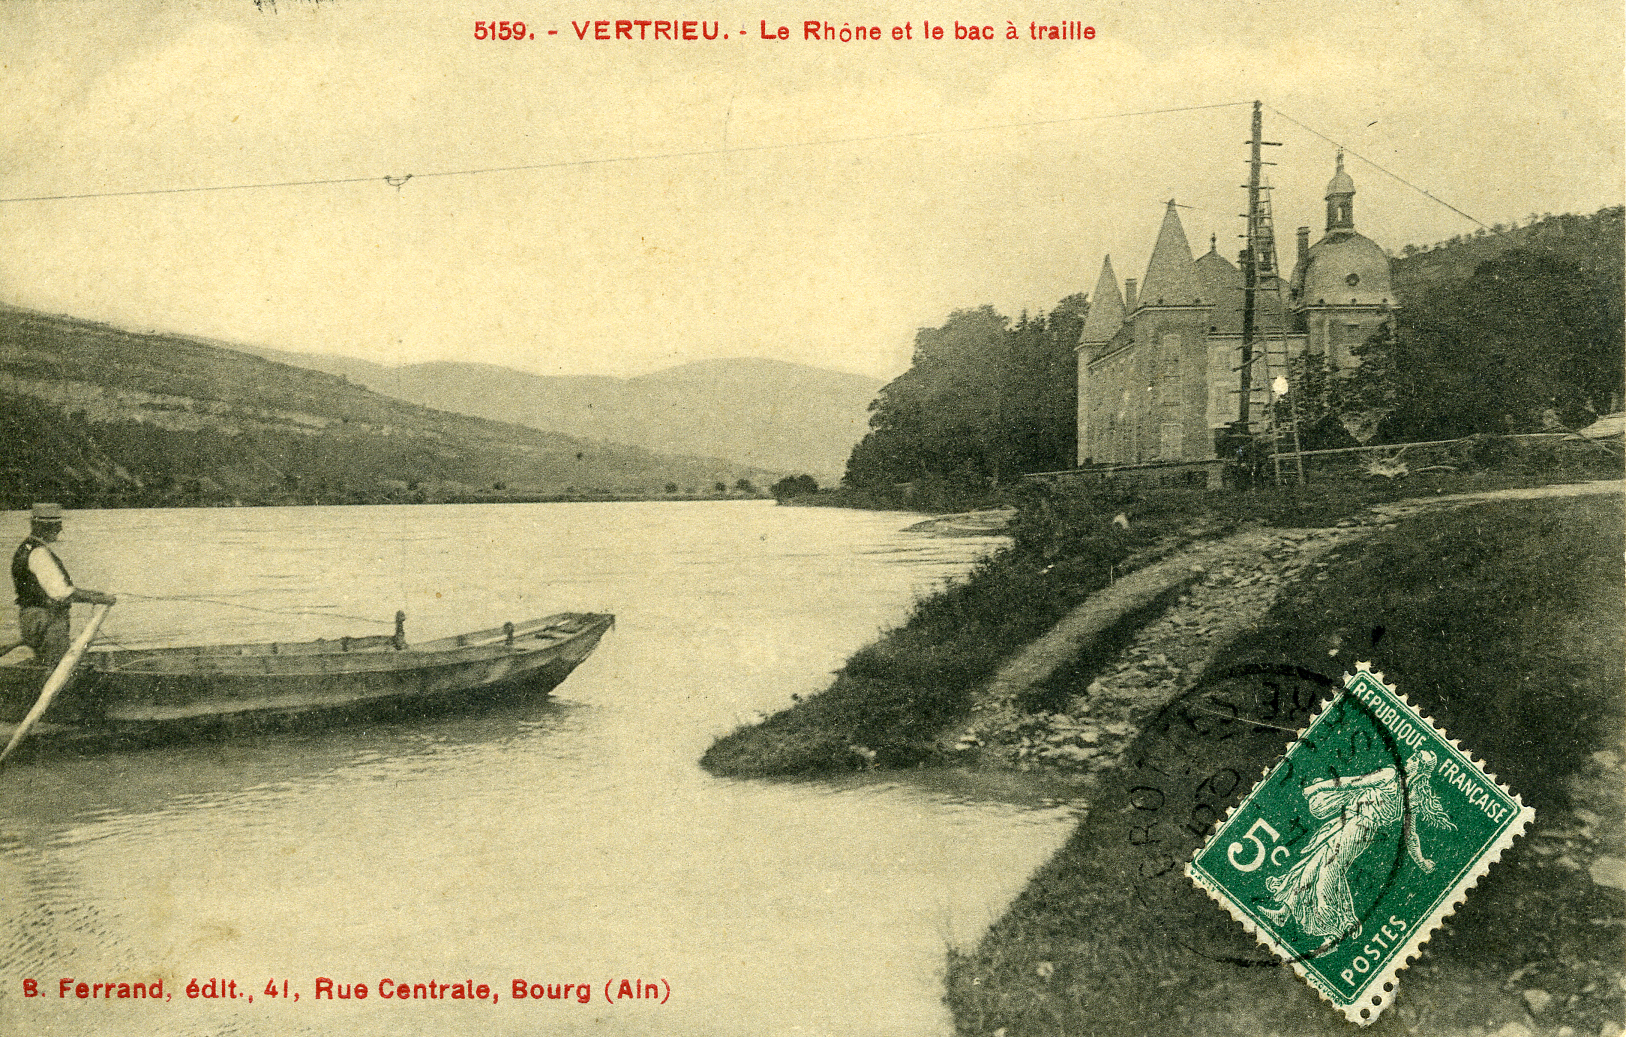 Le Rhône et le bac à traille.jpg